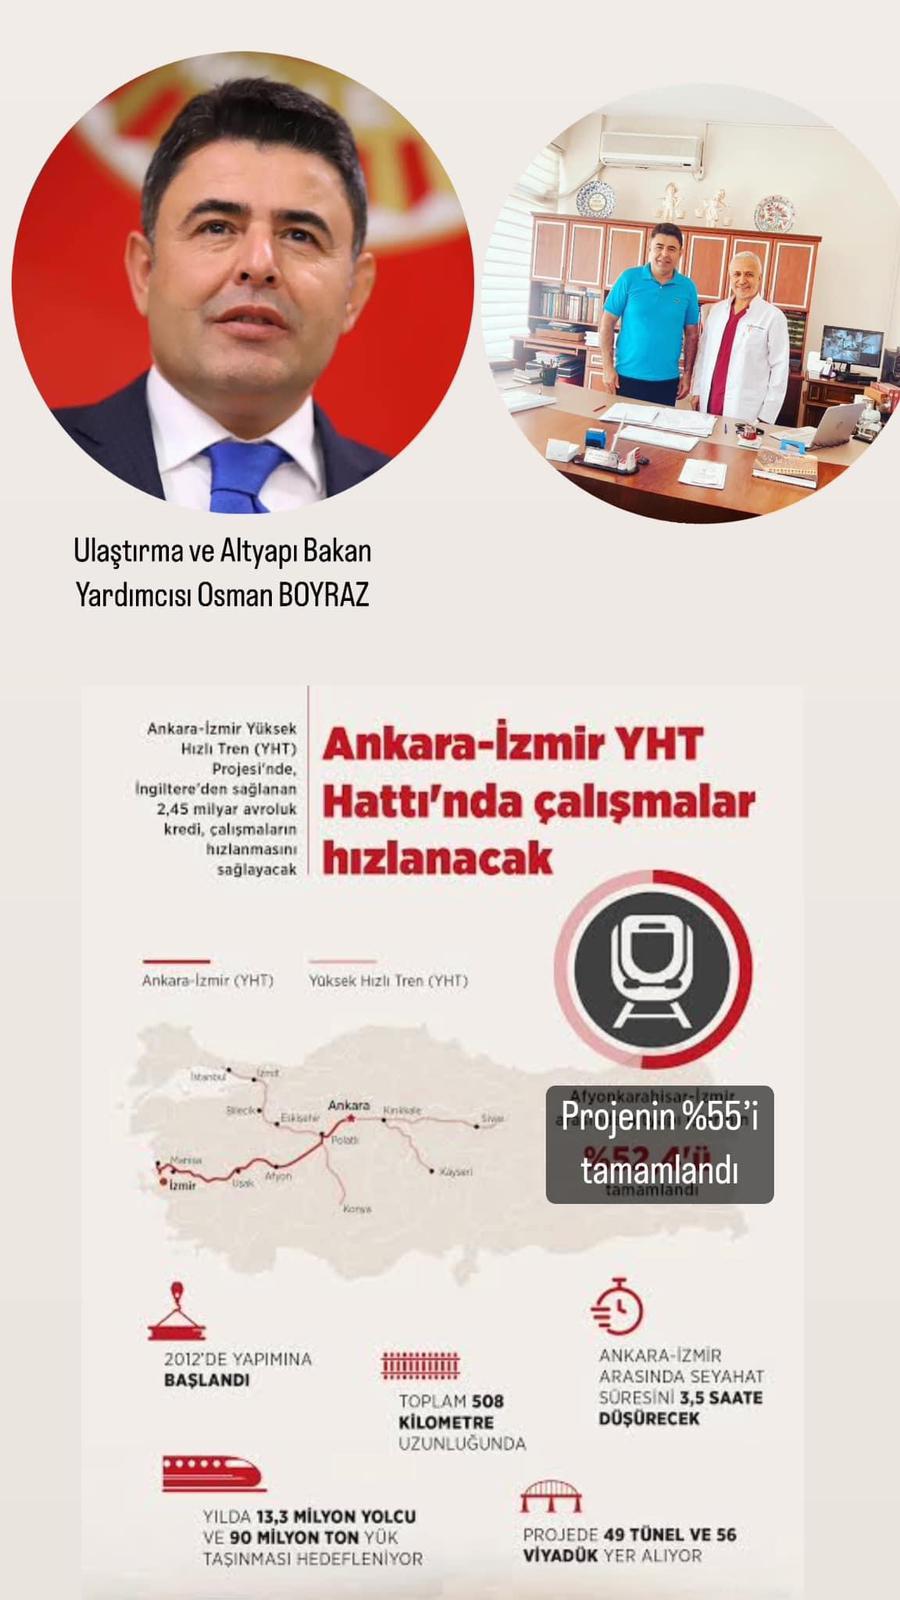 Manisa Ankara Yüksek Hızlı Treni